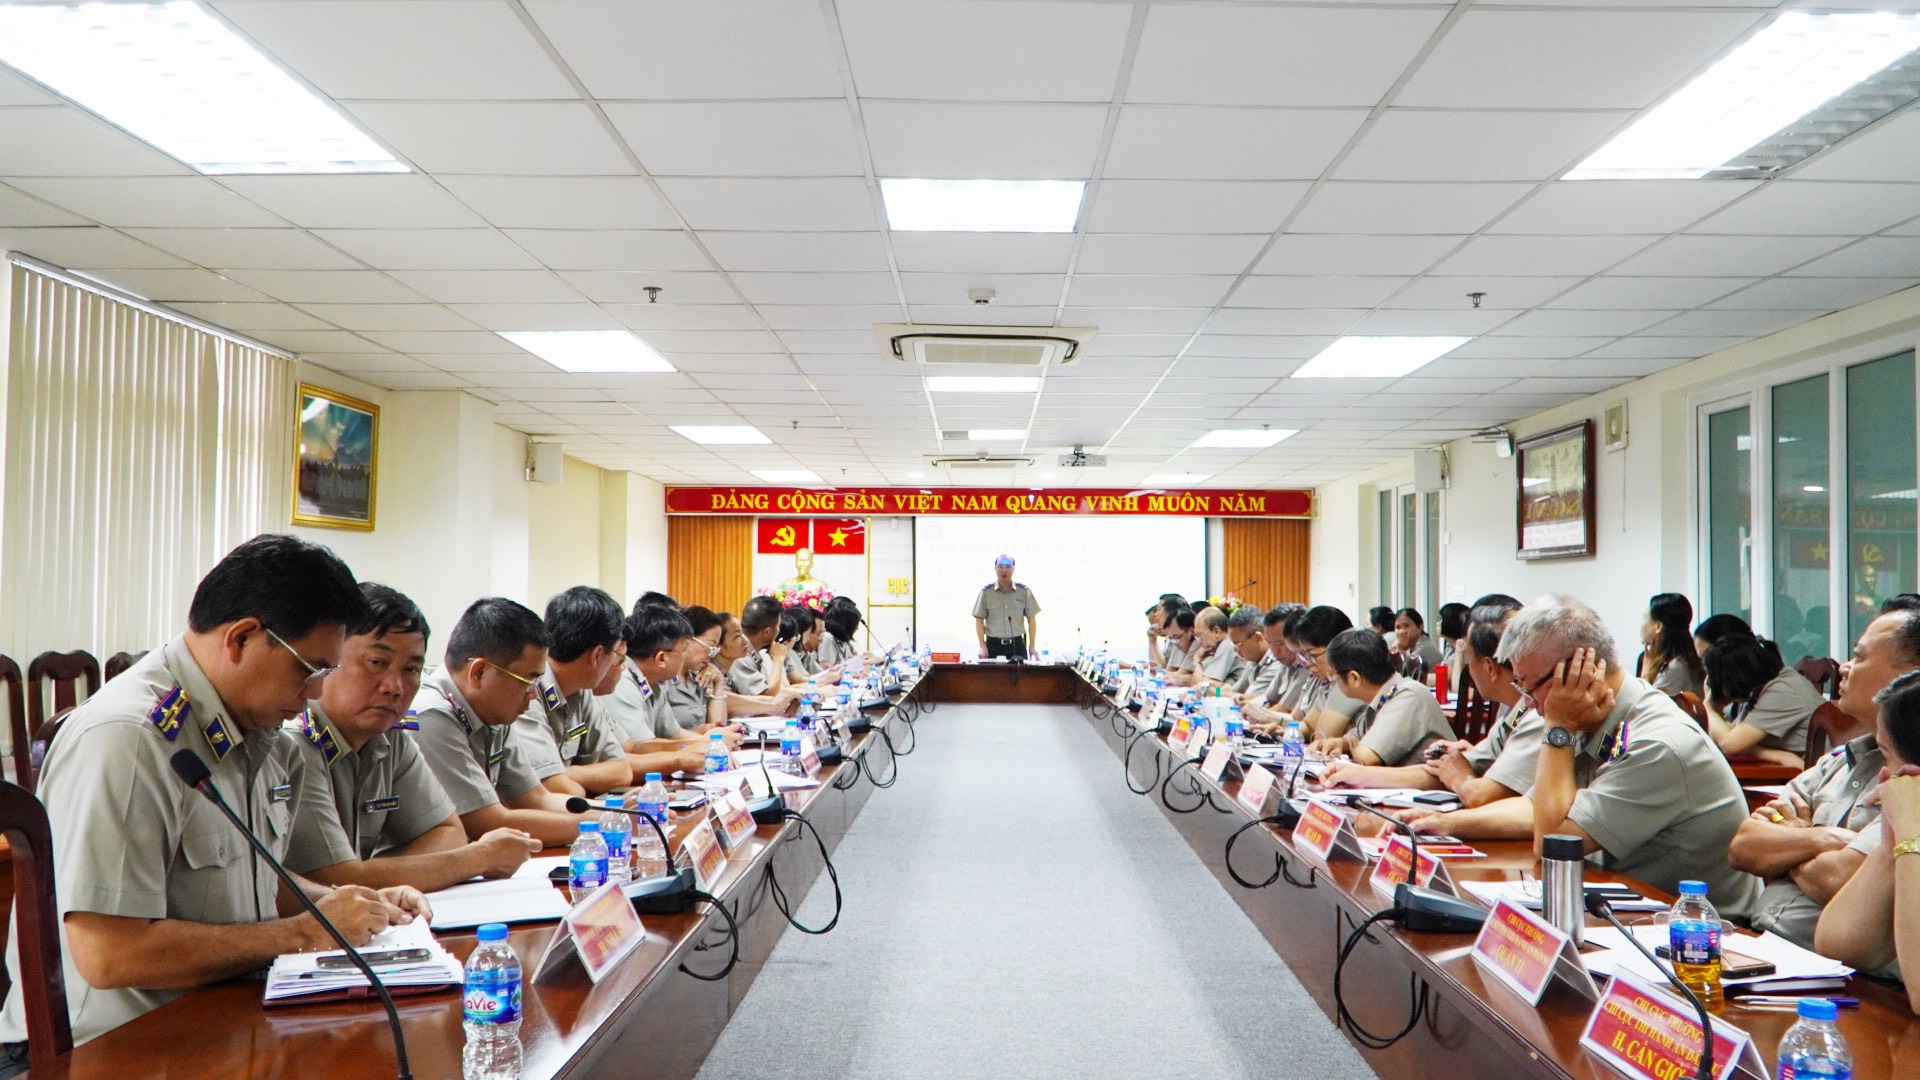 Phó Tổng cục trưởng Nguyễn Thắng Lợi làm việc tại Cục THADS Thành phố Hồ Chí Minh về công tác tiếp công dân, giải quyết khiếu nại, tố cáo